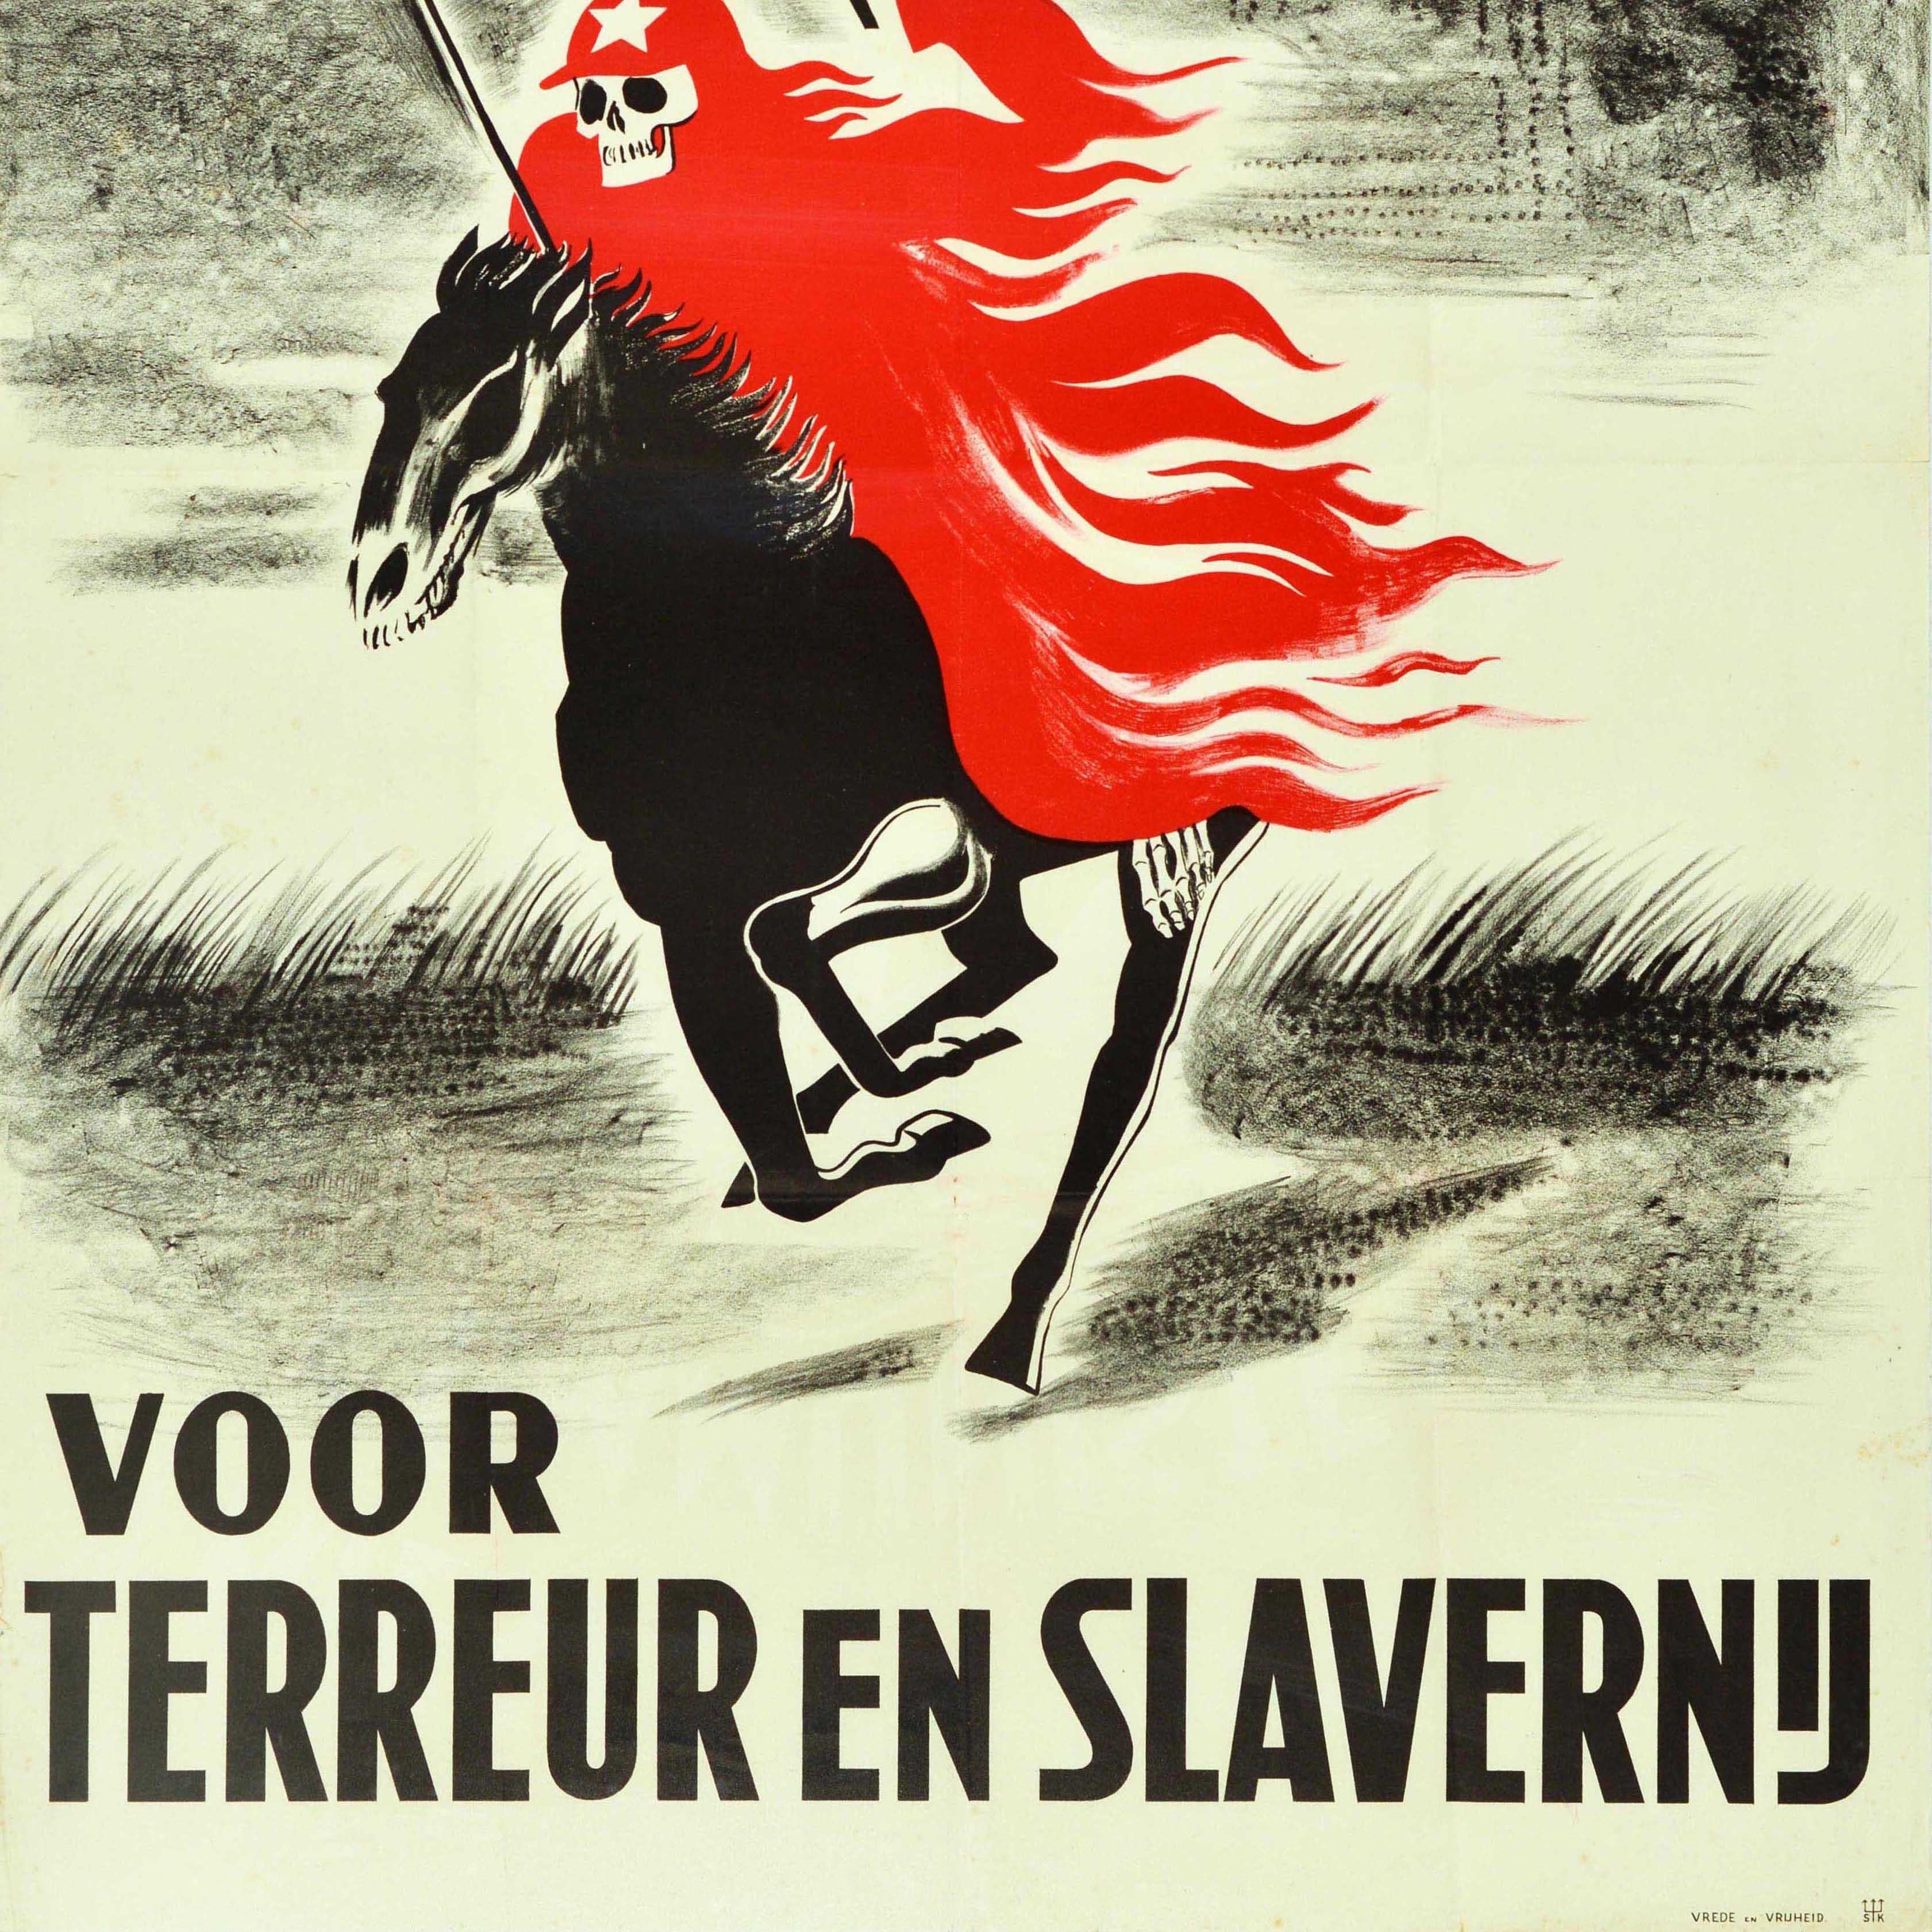 propaganda political posters